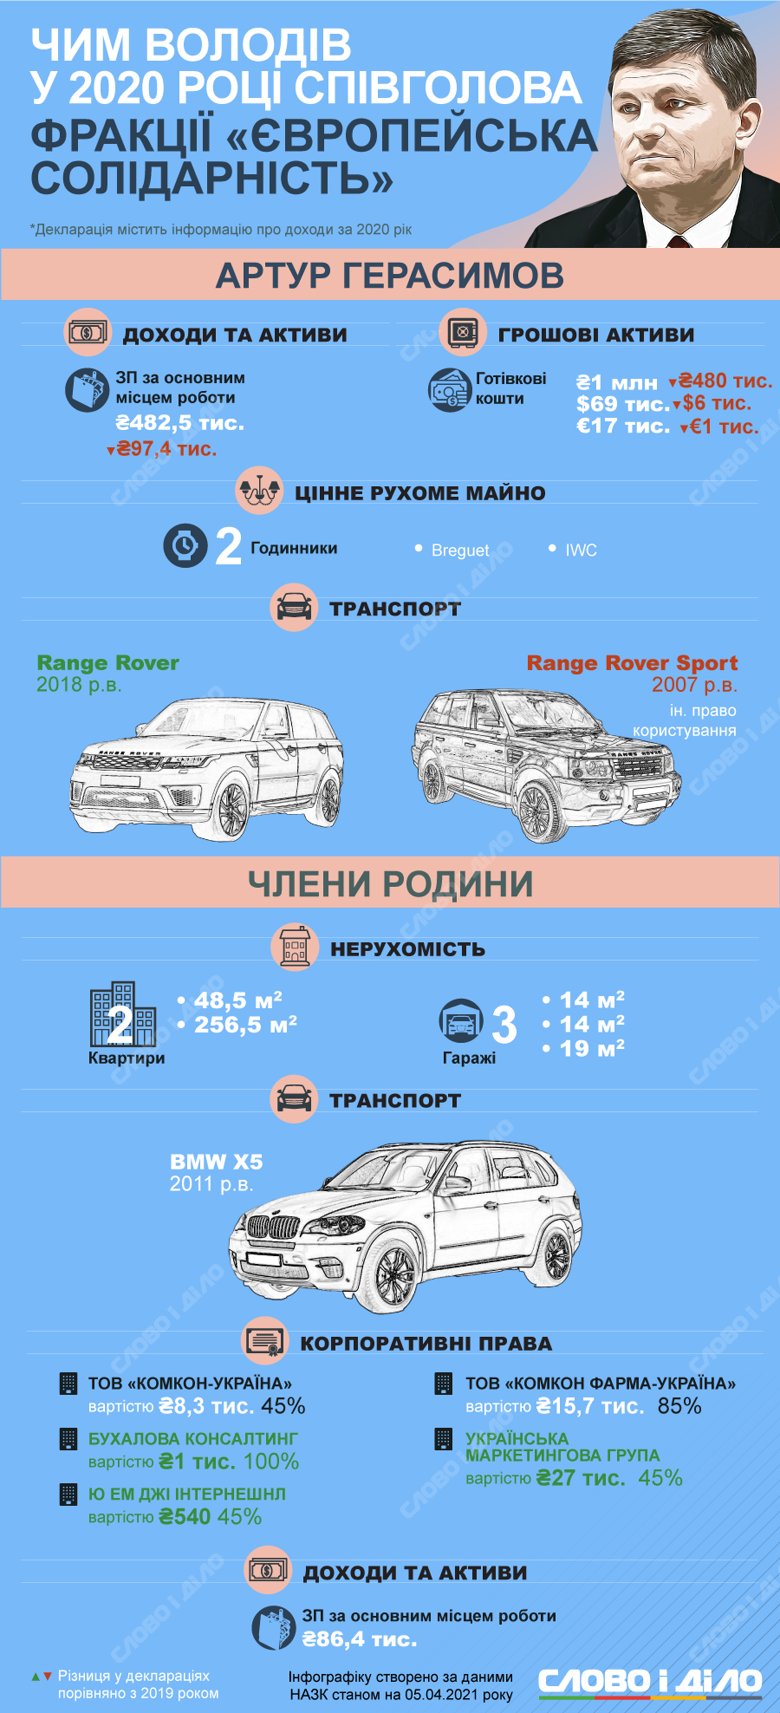 Народний депутат Артур Герасимов задекларував зарплату, готівкові кошти і автомобіль Range Rover.